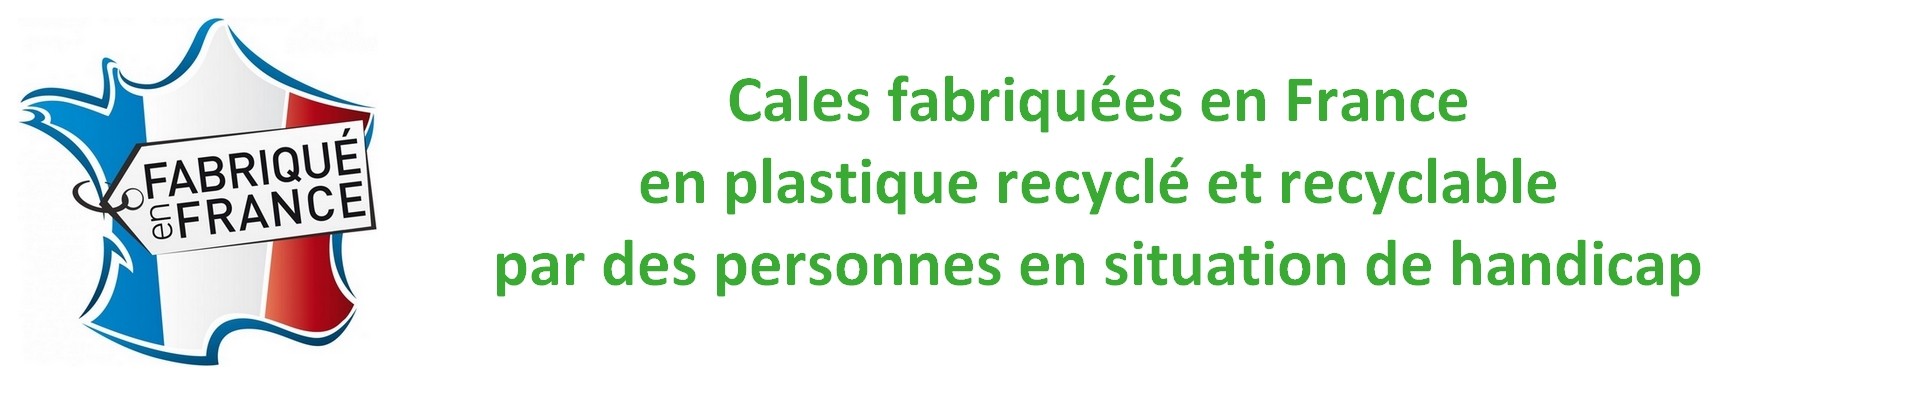 cales fabriquée en France, en plastique recyclé en recyclable, par des personnes en situation de handicap